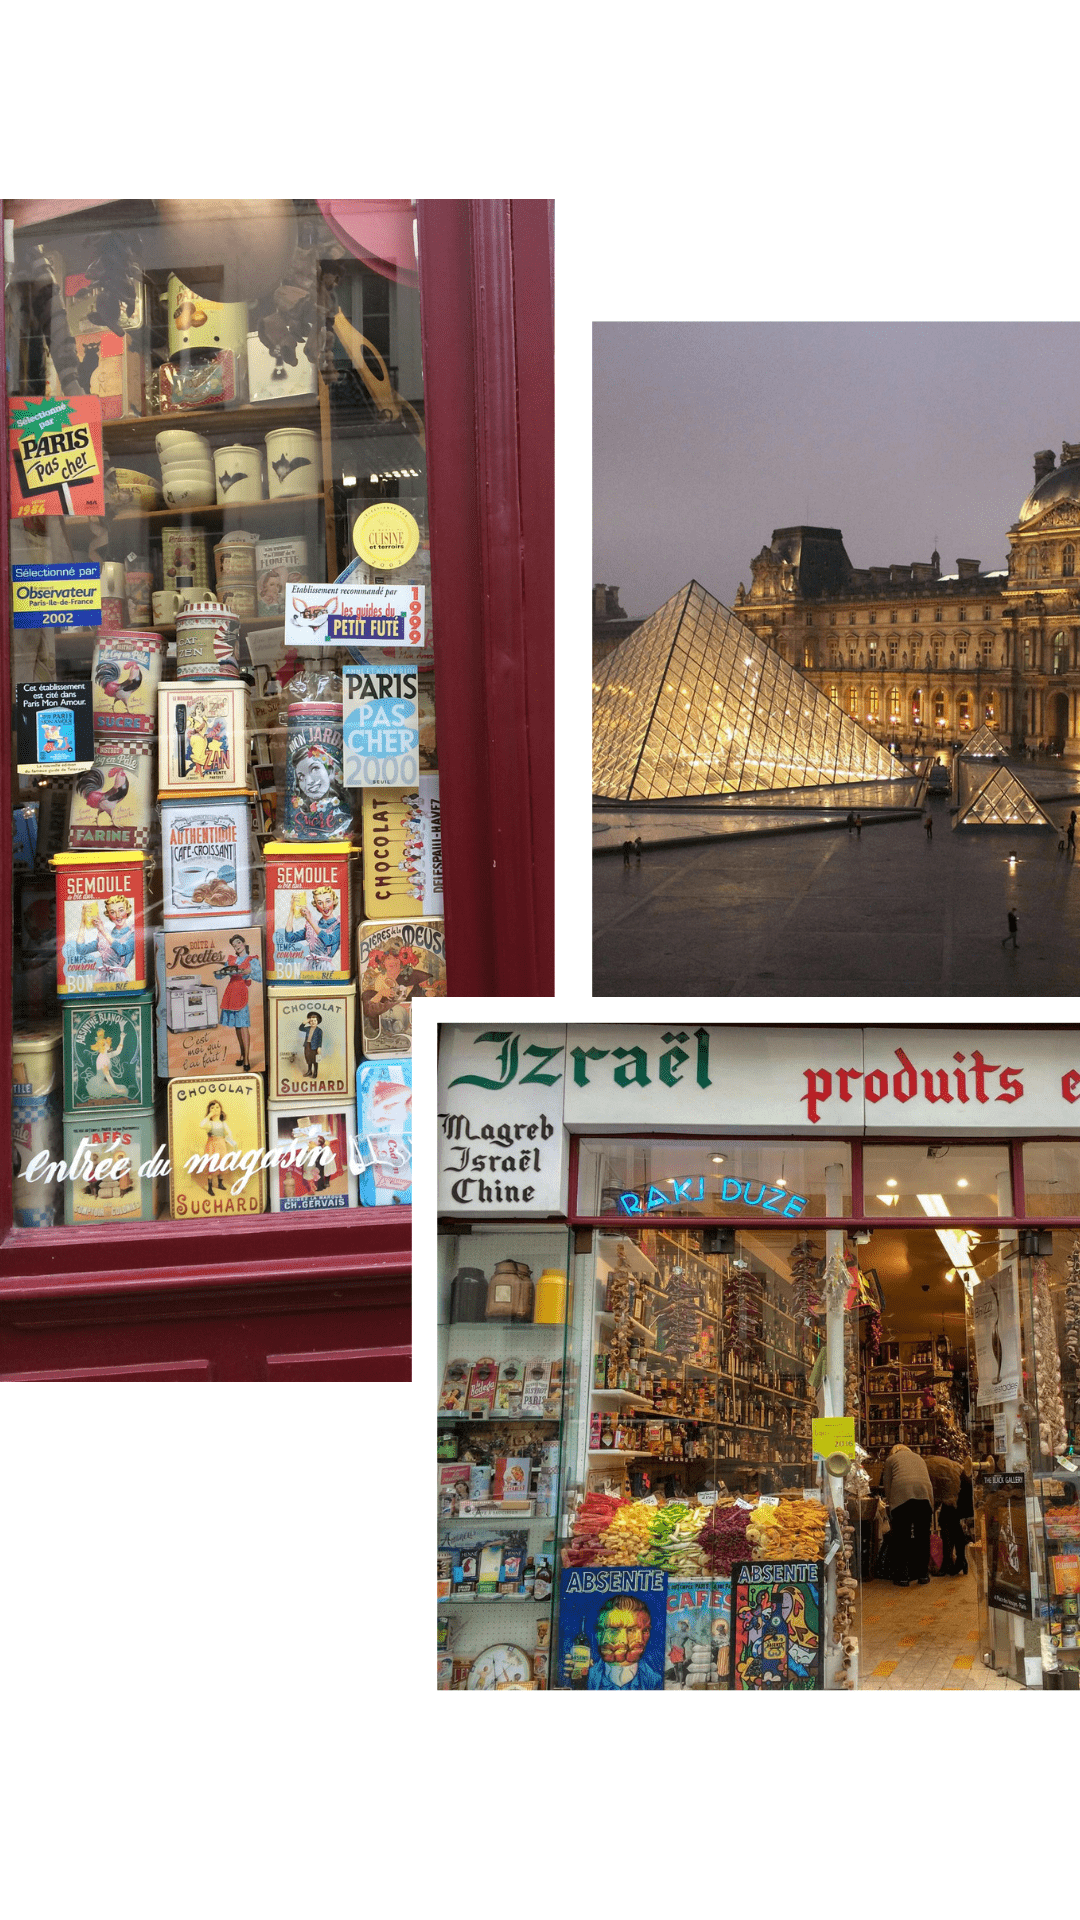 Paris im Frankreich Urlaub entdecken, Sehenswürdigkeiten und alternative Stadtteile